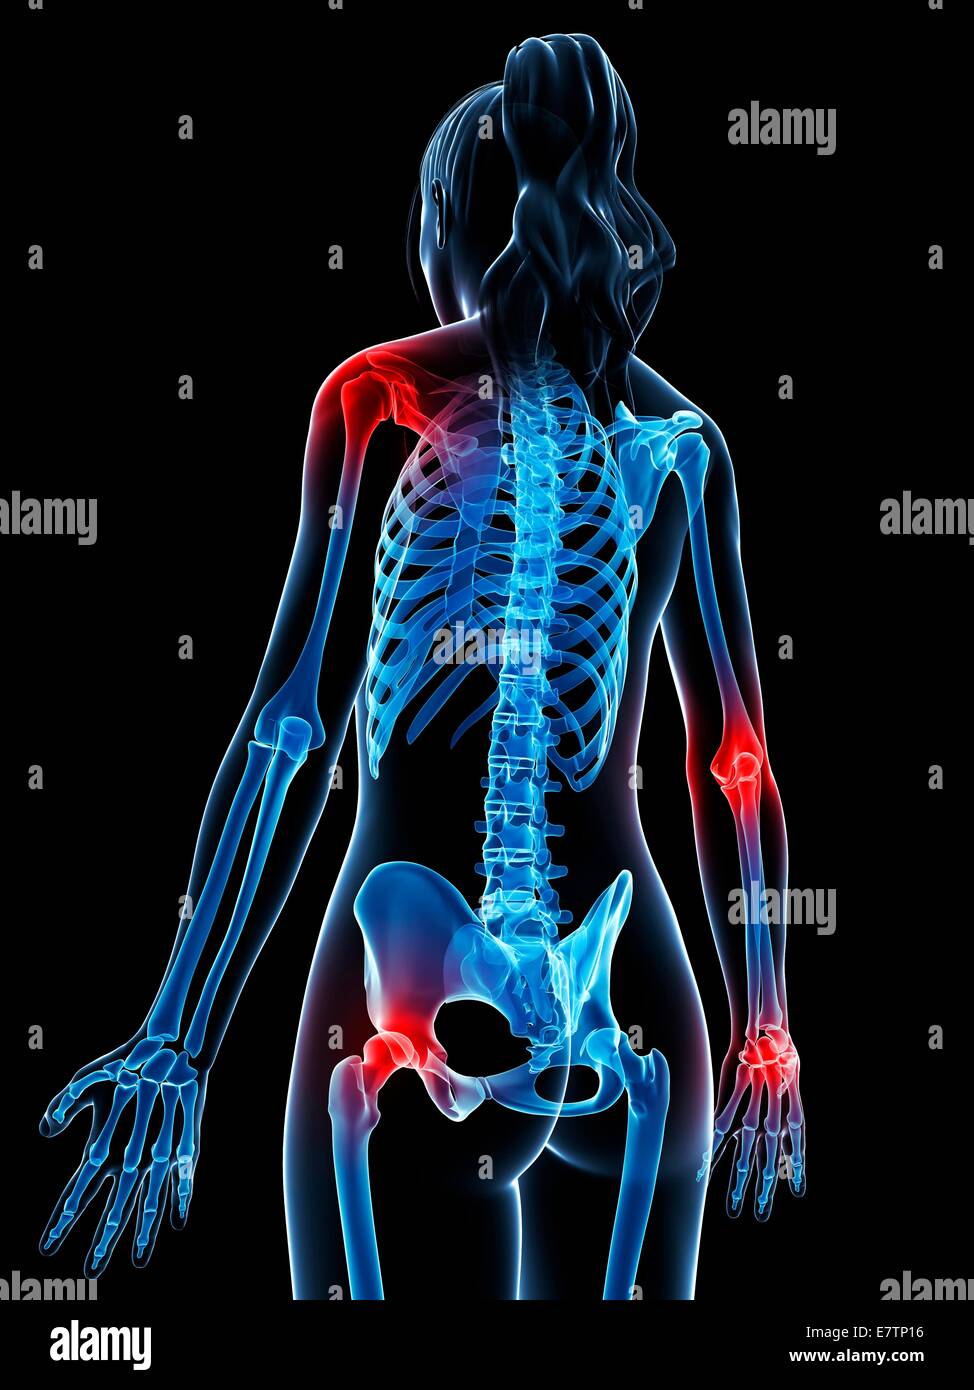 Menschliche Anatomie von entzündeten Gelenken, Computer-Grafik. Stockfoto